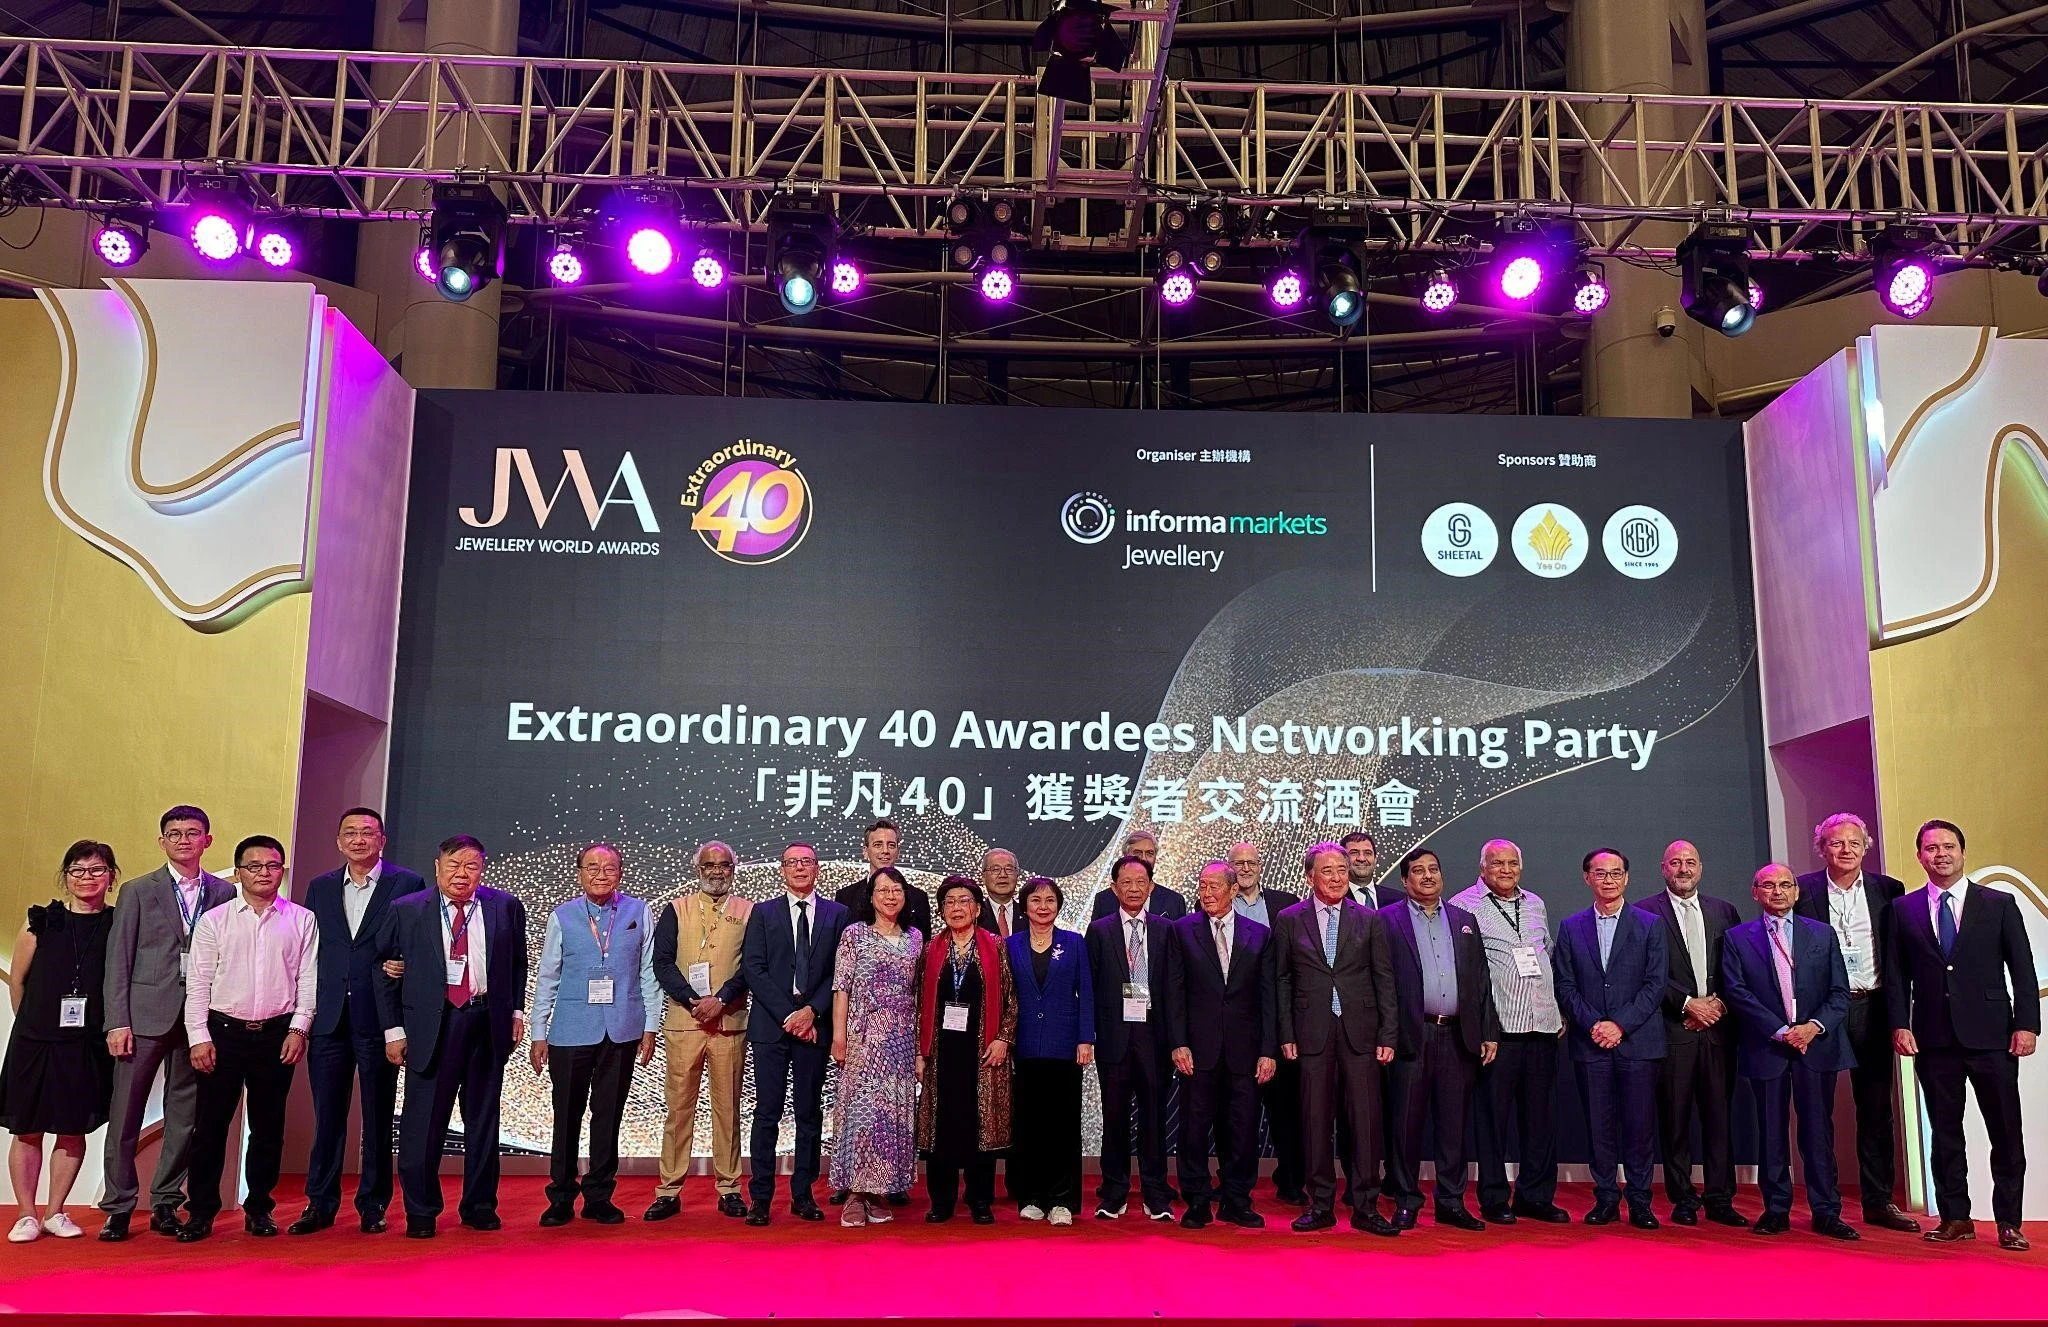 awardees of extraordinary 40 awards